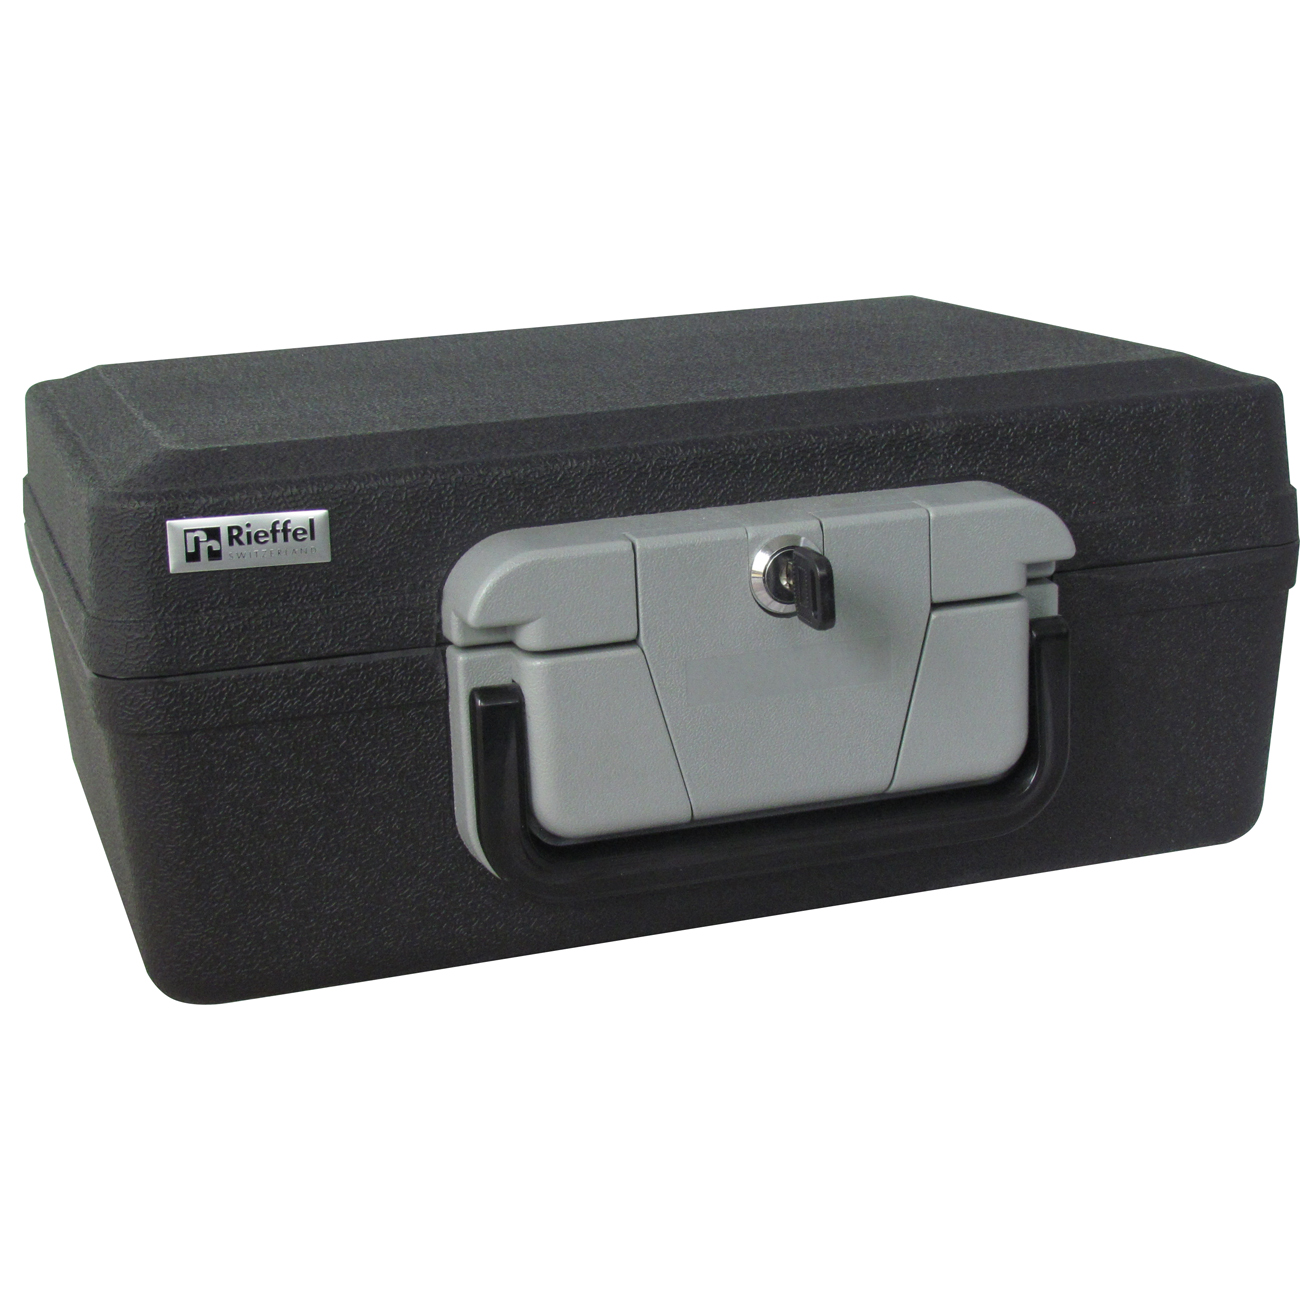 Sicherheitskoffer Rieffel SECURITYCASE 6 - Tragbarer Safe für Dokumente - Elektronisch und mit Schlüssel - Schwarz/Grau - 6,4 l Fassungsvermögen - Aus Kunststoff